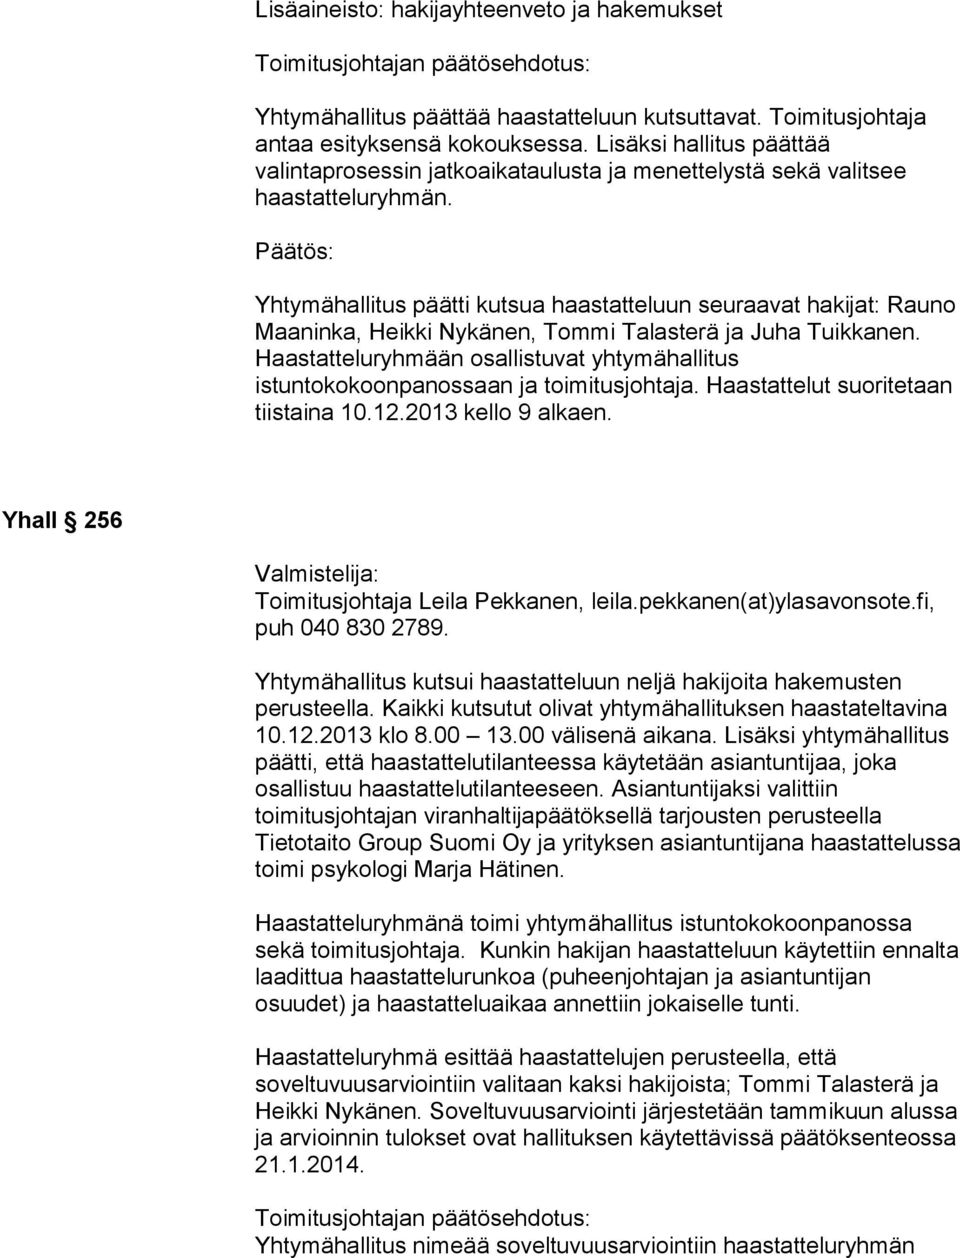 Yhtymähallitus päätti kutsua haastatteluun seuraavat hakijat: Rauno Maaninka, Heikki Nykänen, Tommi Talasterä ja Juha Tuikkanen.